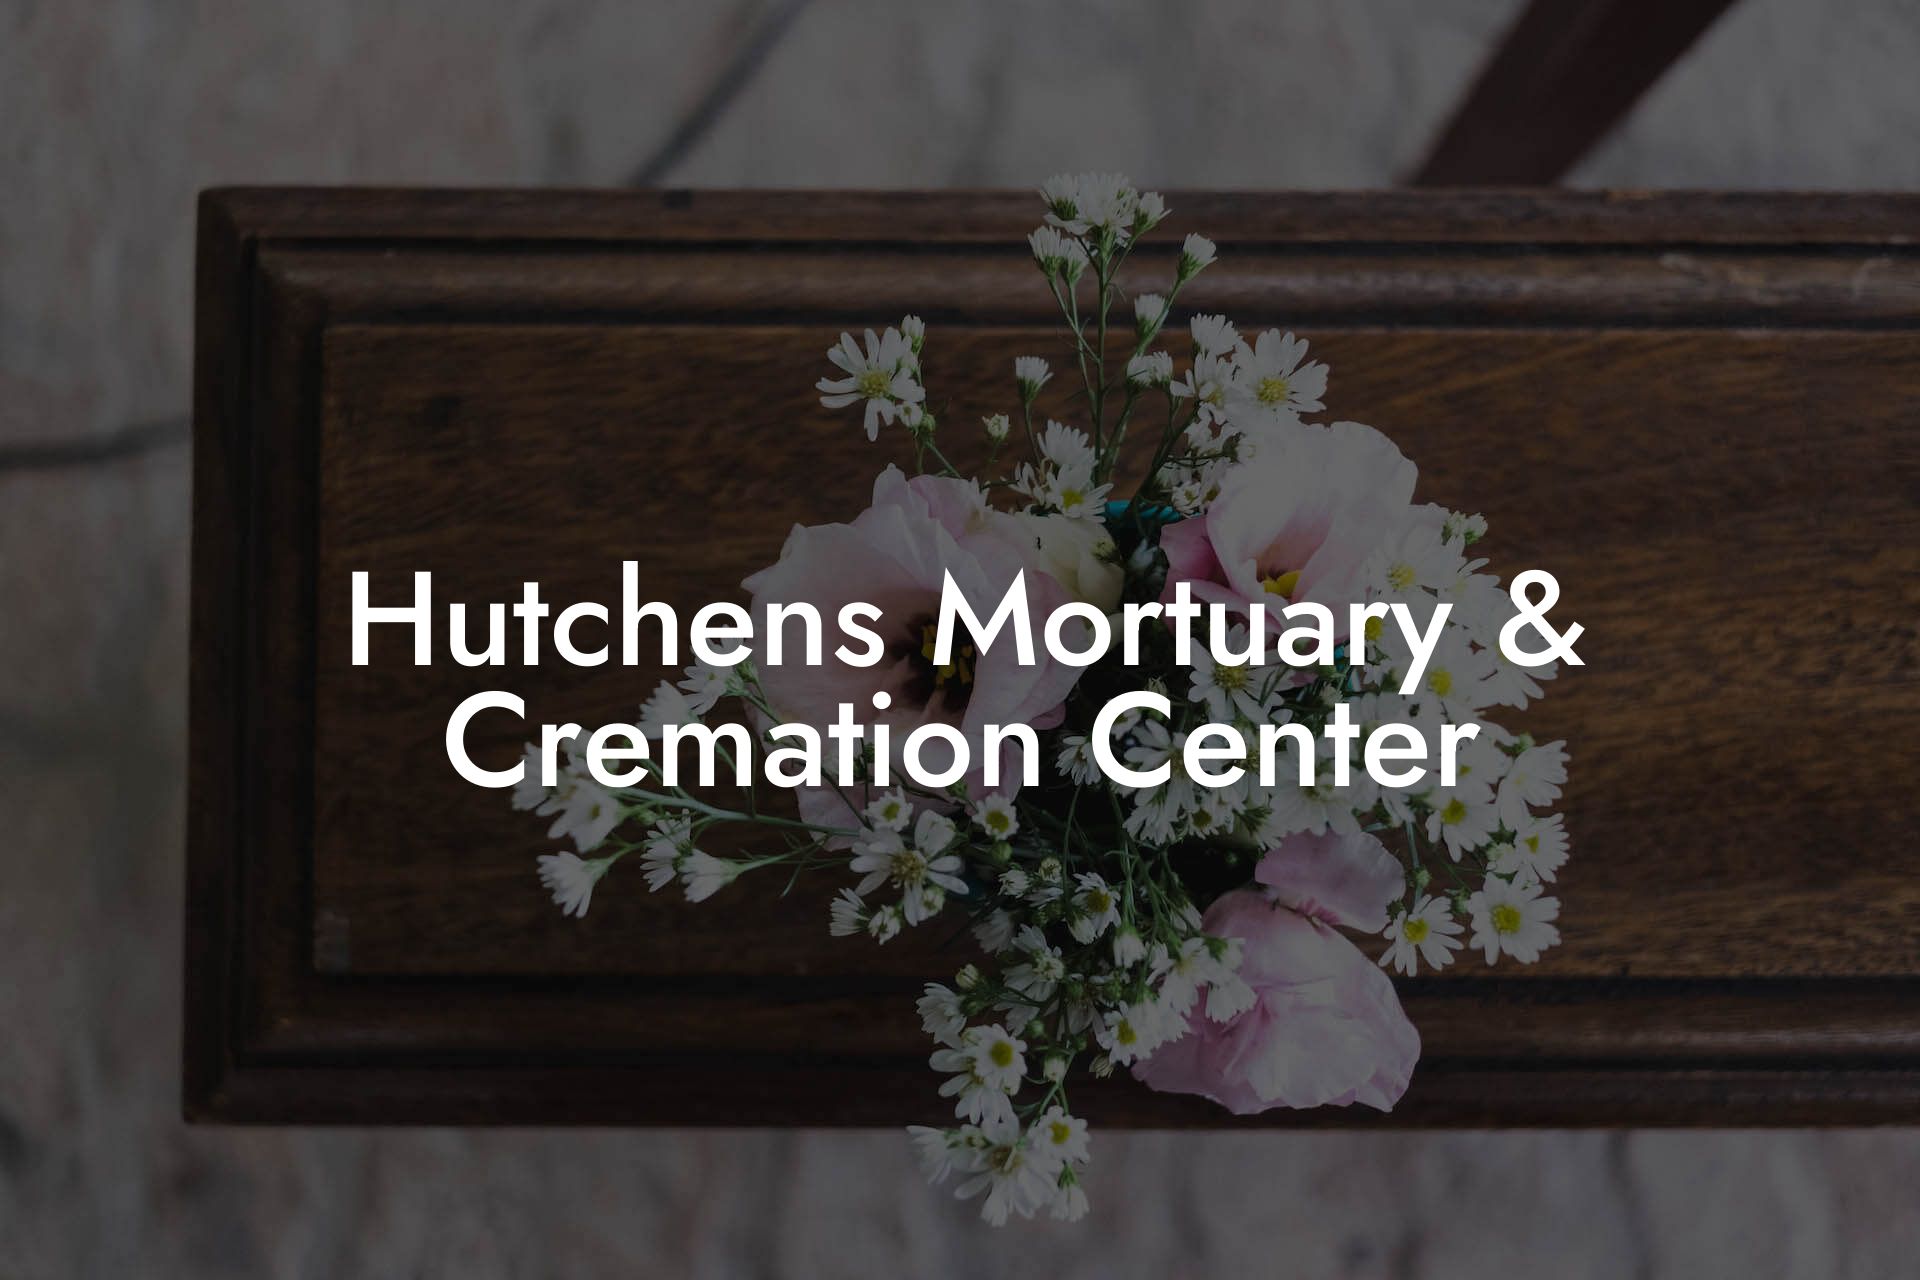 Hutchens Mortuary & Cremation Center